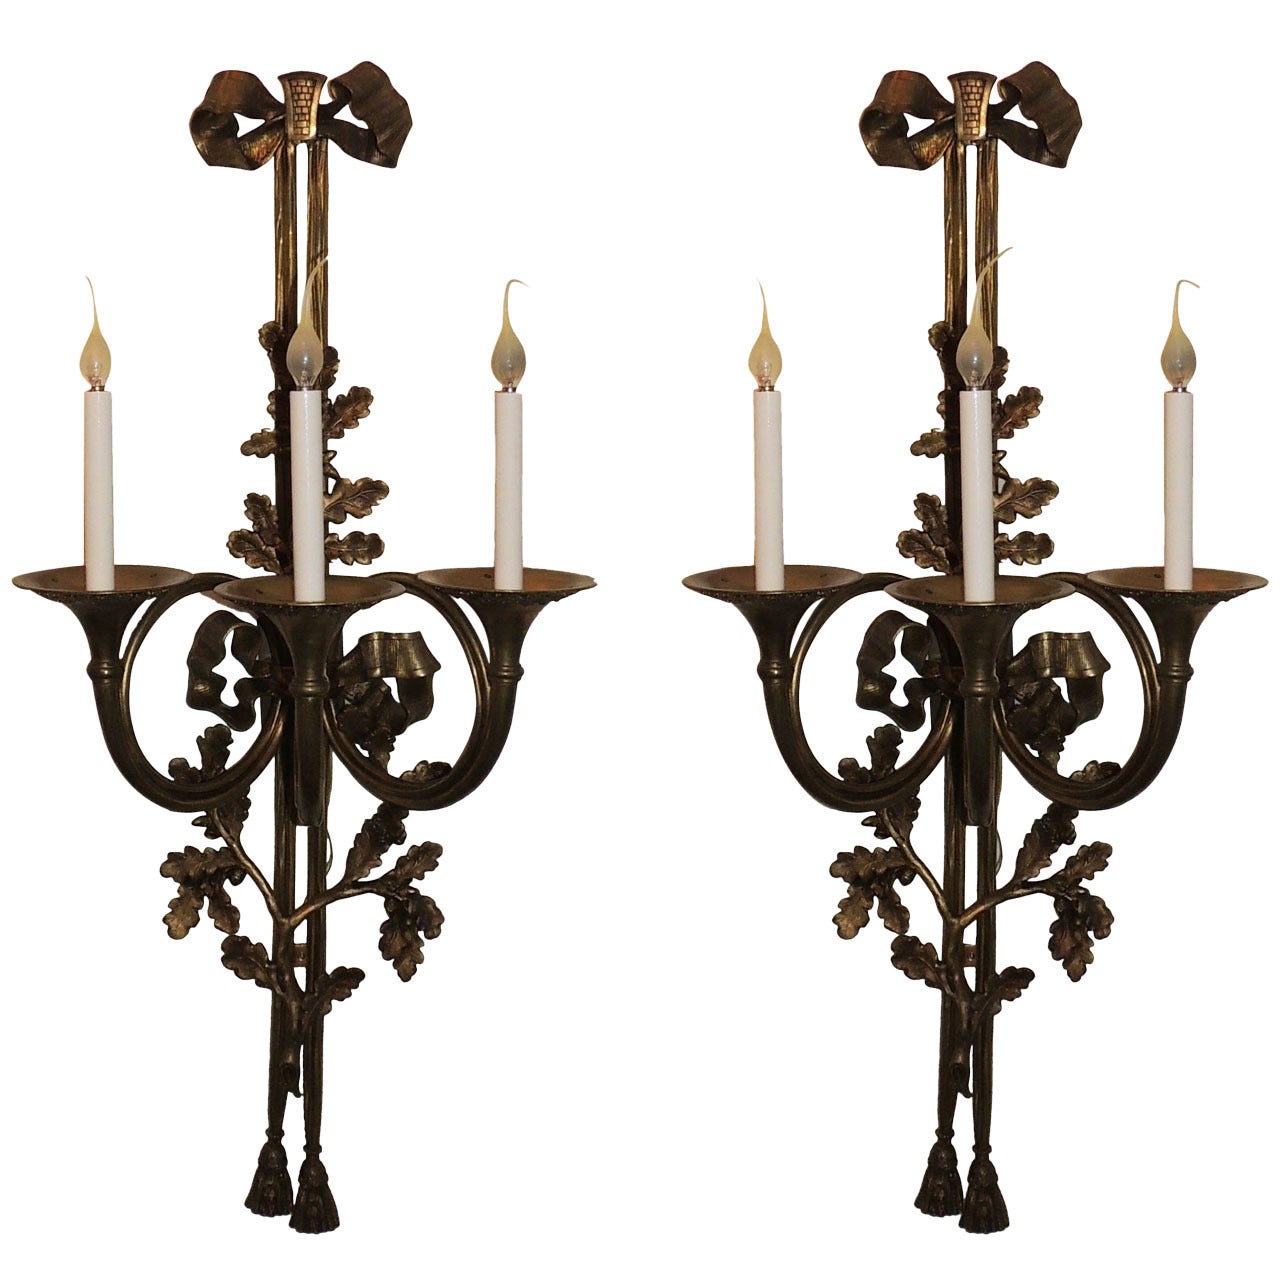 Merveilleuse paire monumentale de grandes appliques monumentales en bronze en forme de flûte de corne française avec nœud papillon sur le dessus